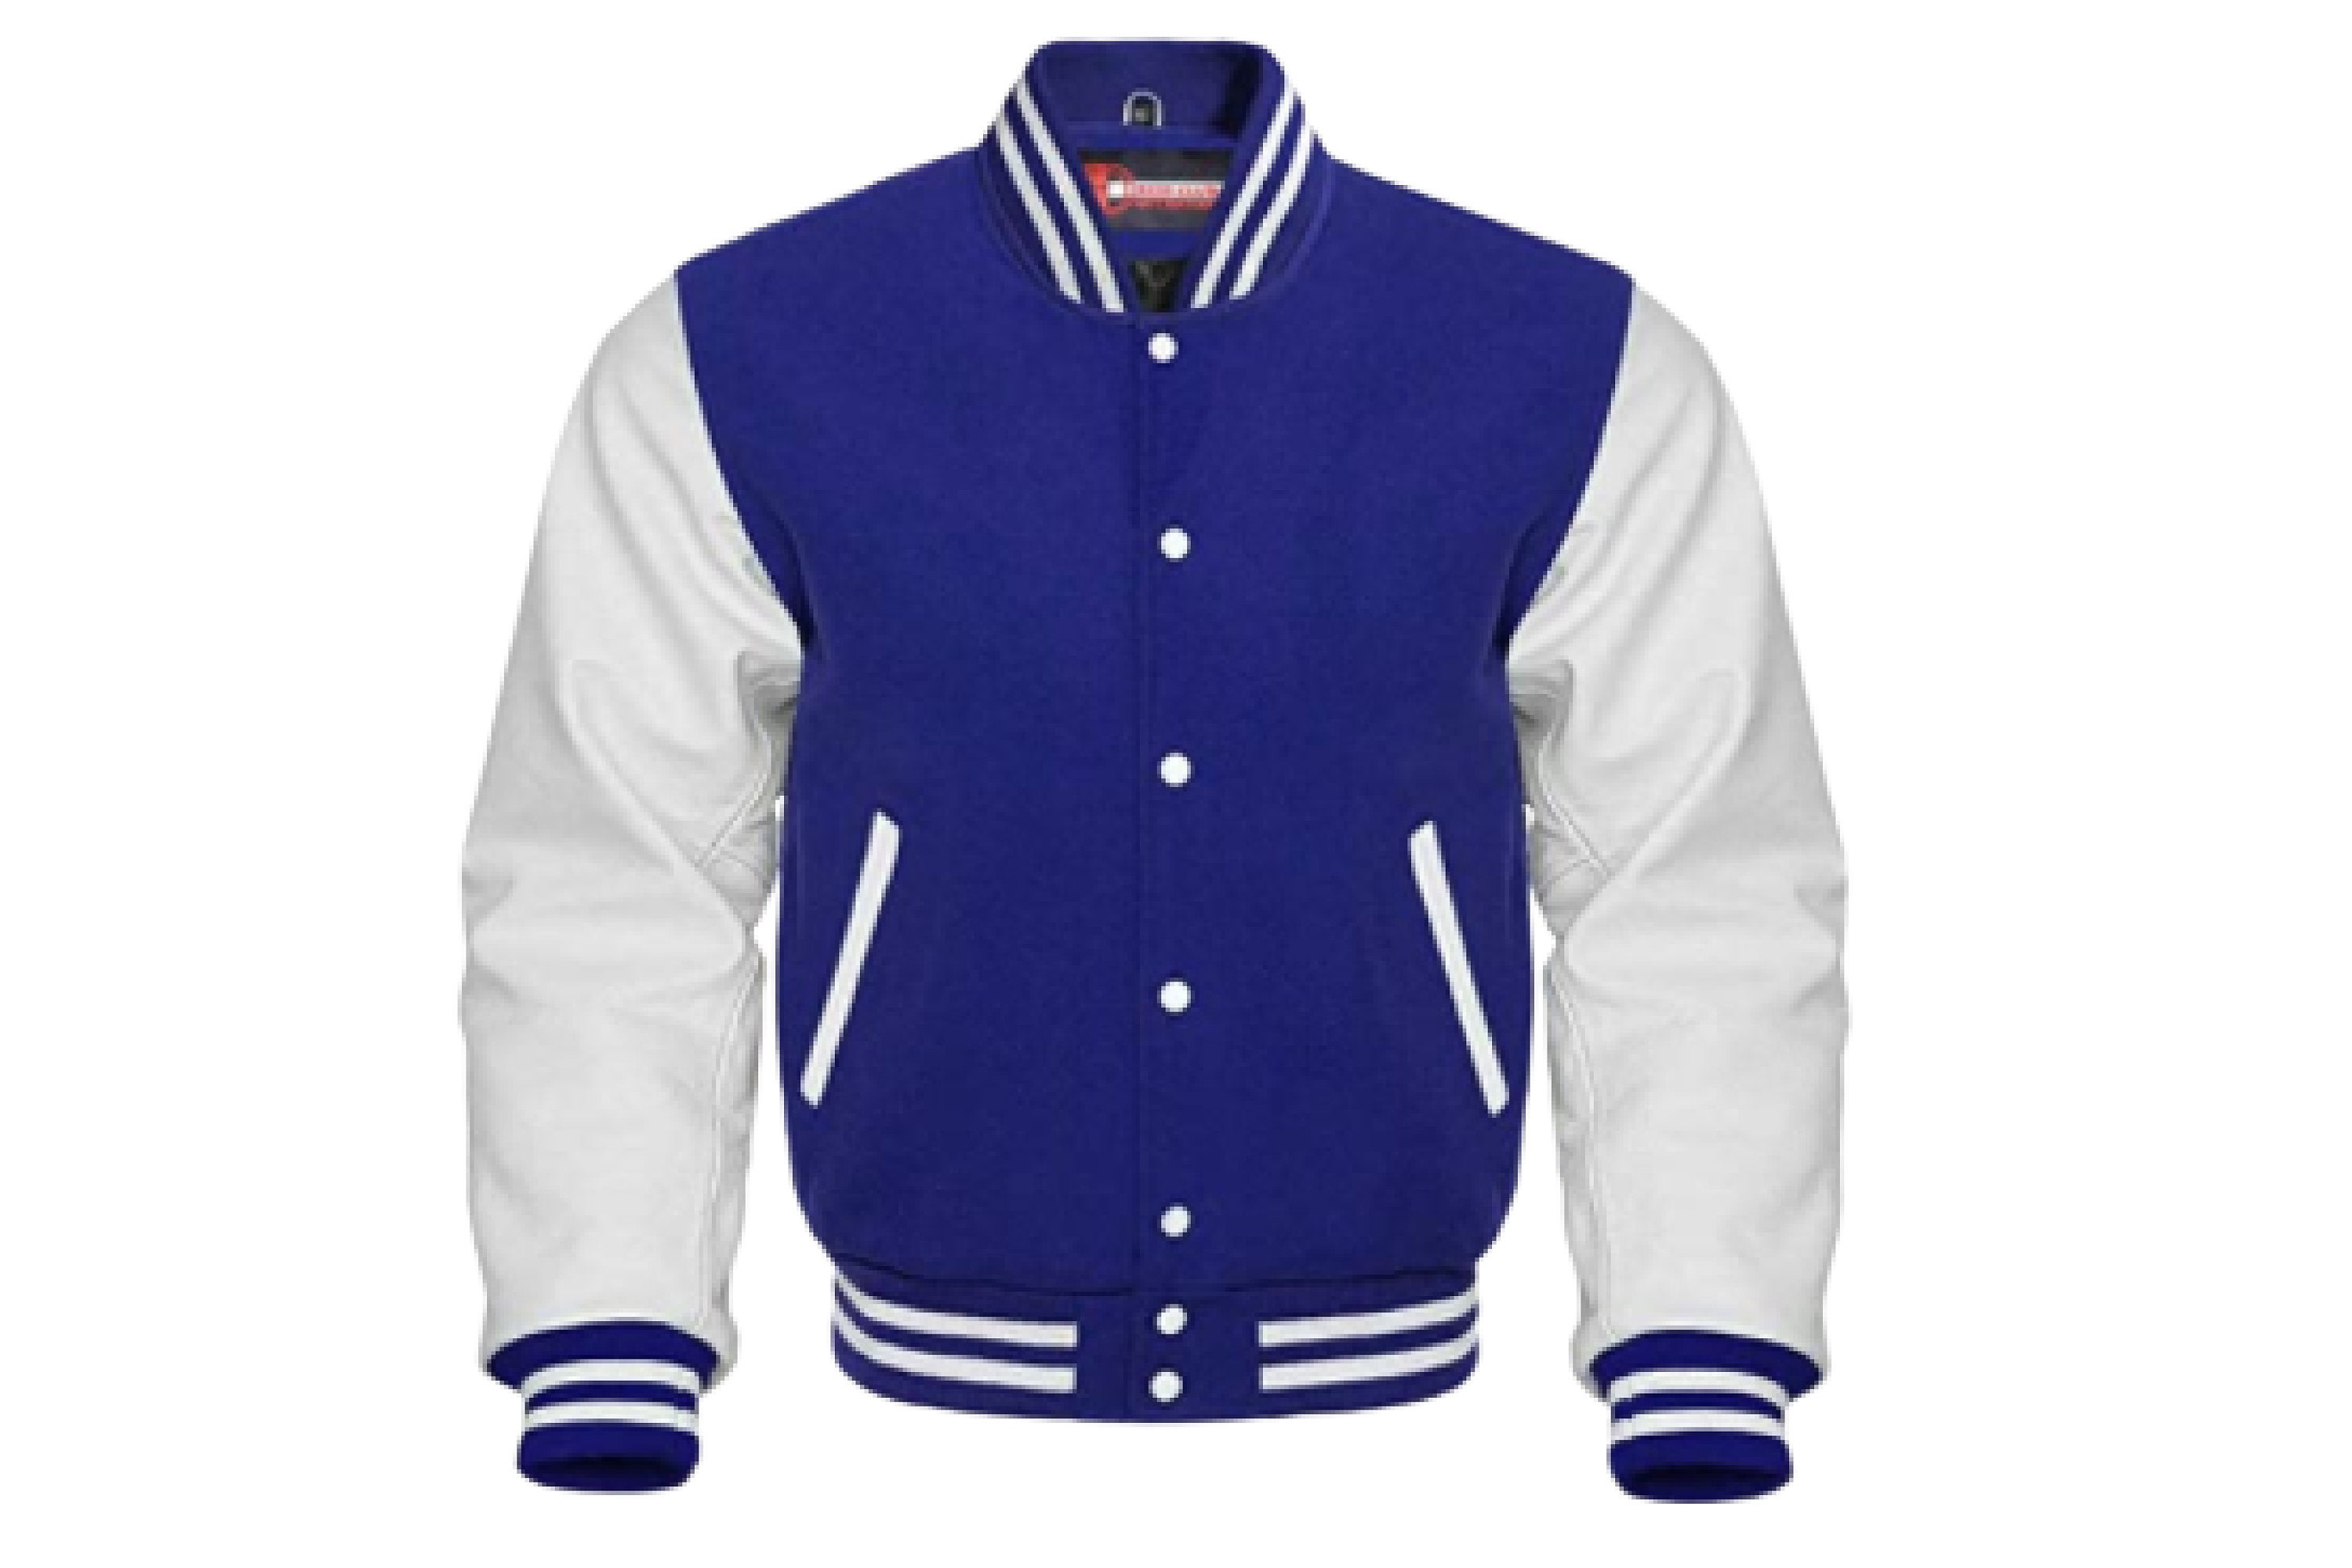 Buy Blue Varsity Jacket Online In India - Etsy India